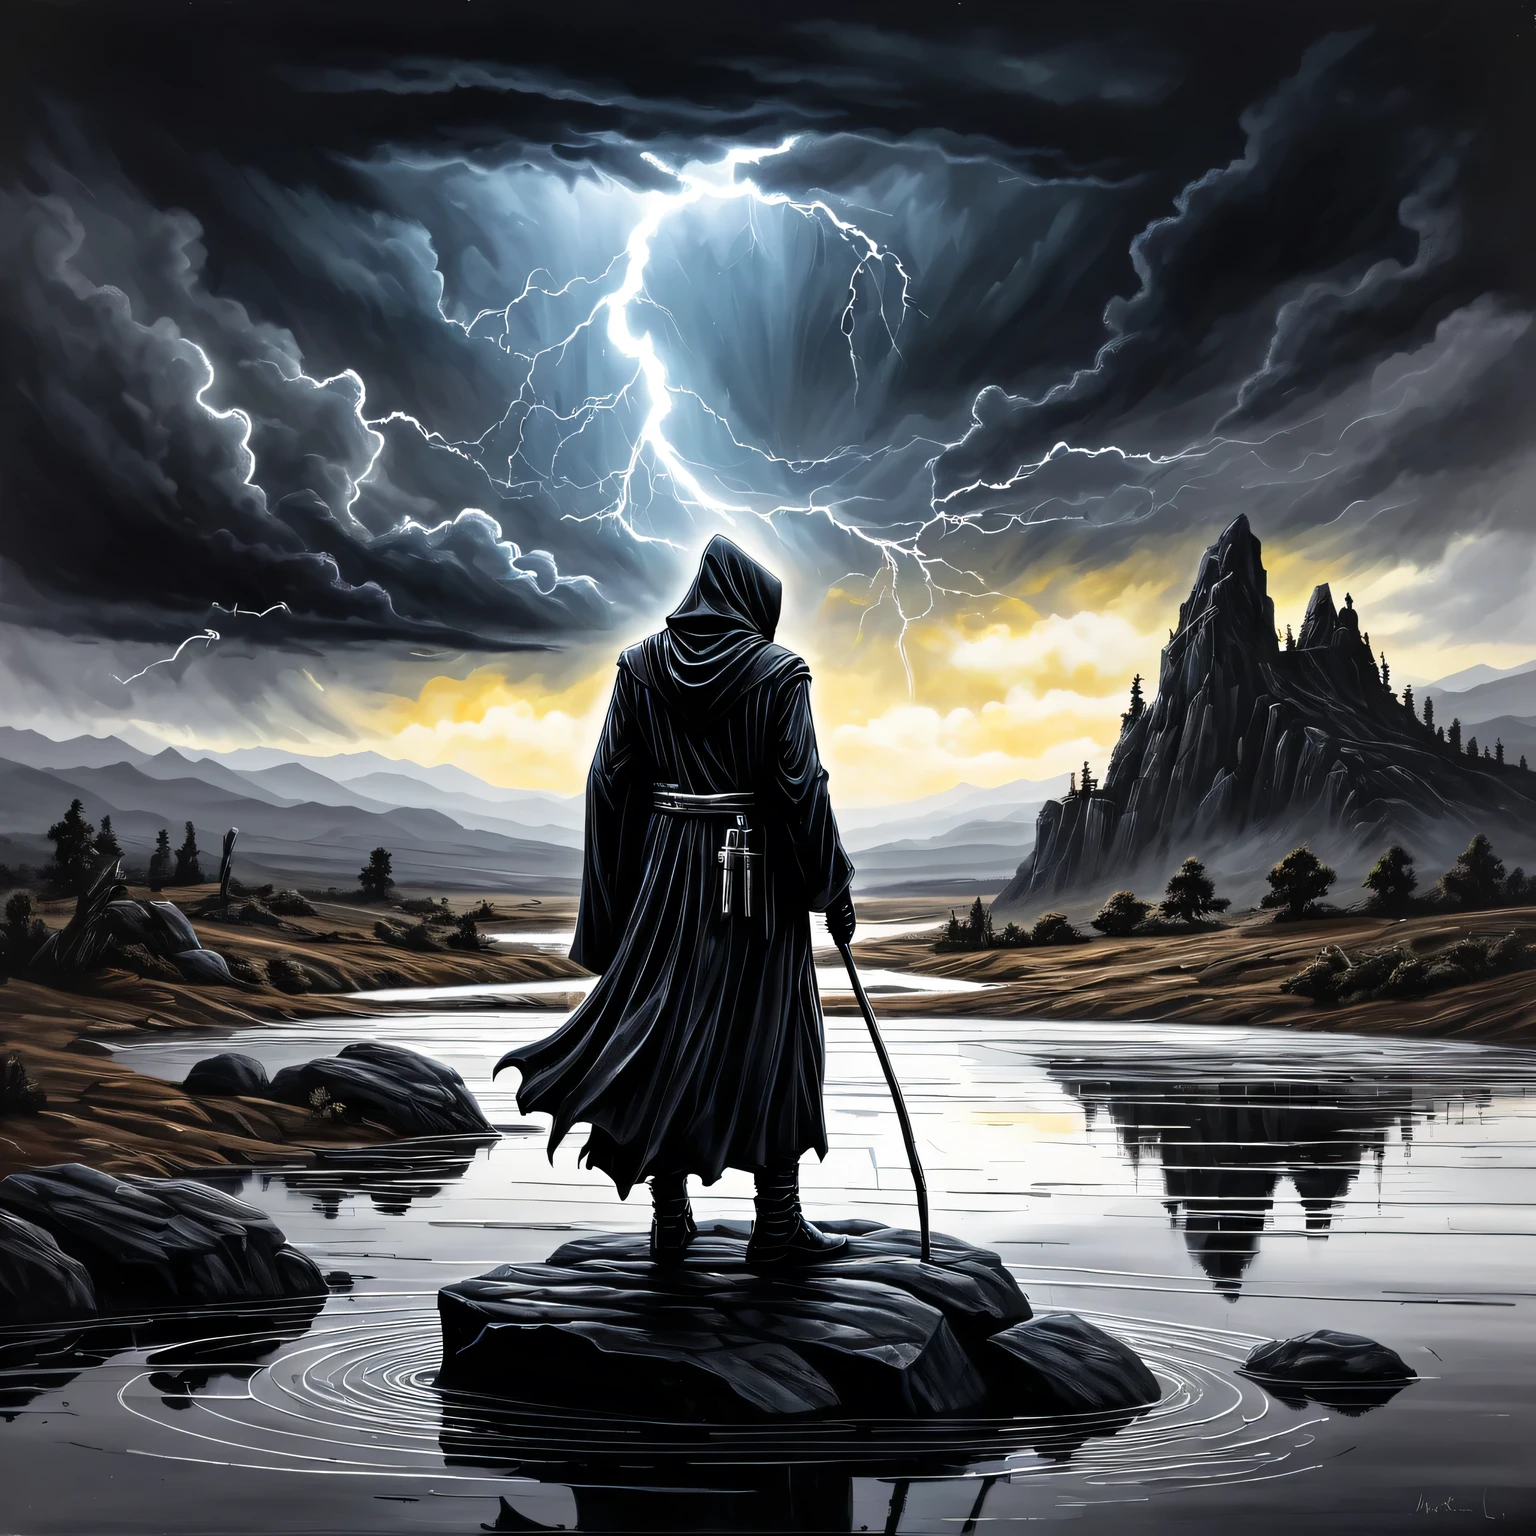 ((Liquid โลหะ Art)), ภาพวาดนี้ทาสีด้วยโลหะเหลวบนกระดาษพื้นผิวและพรรณนาภูมิทัศน์ที่เรียบง่ายสวยงามโดยมี Black Grim Reaper ยืนอยู่บนก้อนหิน, Liquid โลหะ Black Grim Reaper looks ominous and gloomy, เบื้องหลังเป็นท้องฟ้ามืดครึ้มมีเมฆและฟ้าผ่า, ภาพวาดทำจากโลหะเหลว. โลหะ, ผลงานชิ้นเอก, รูปทรงที่ชัดเจน, 32 กะรัต